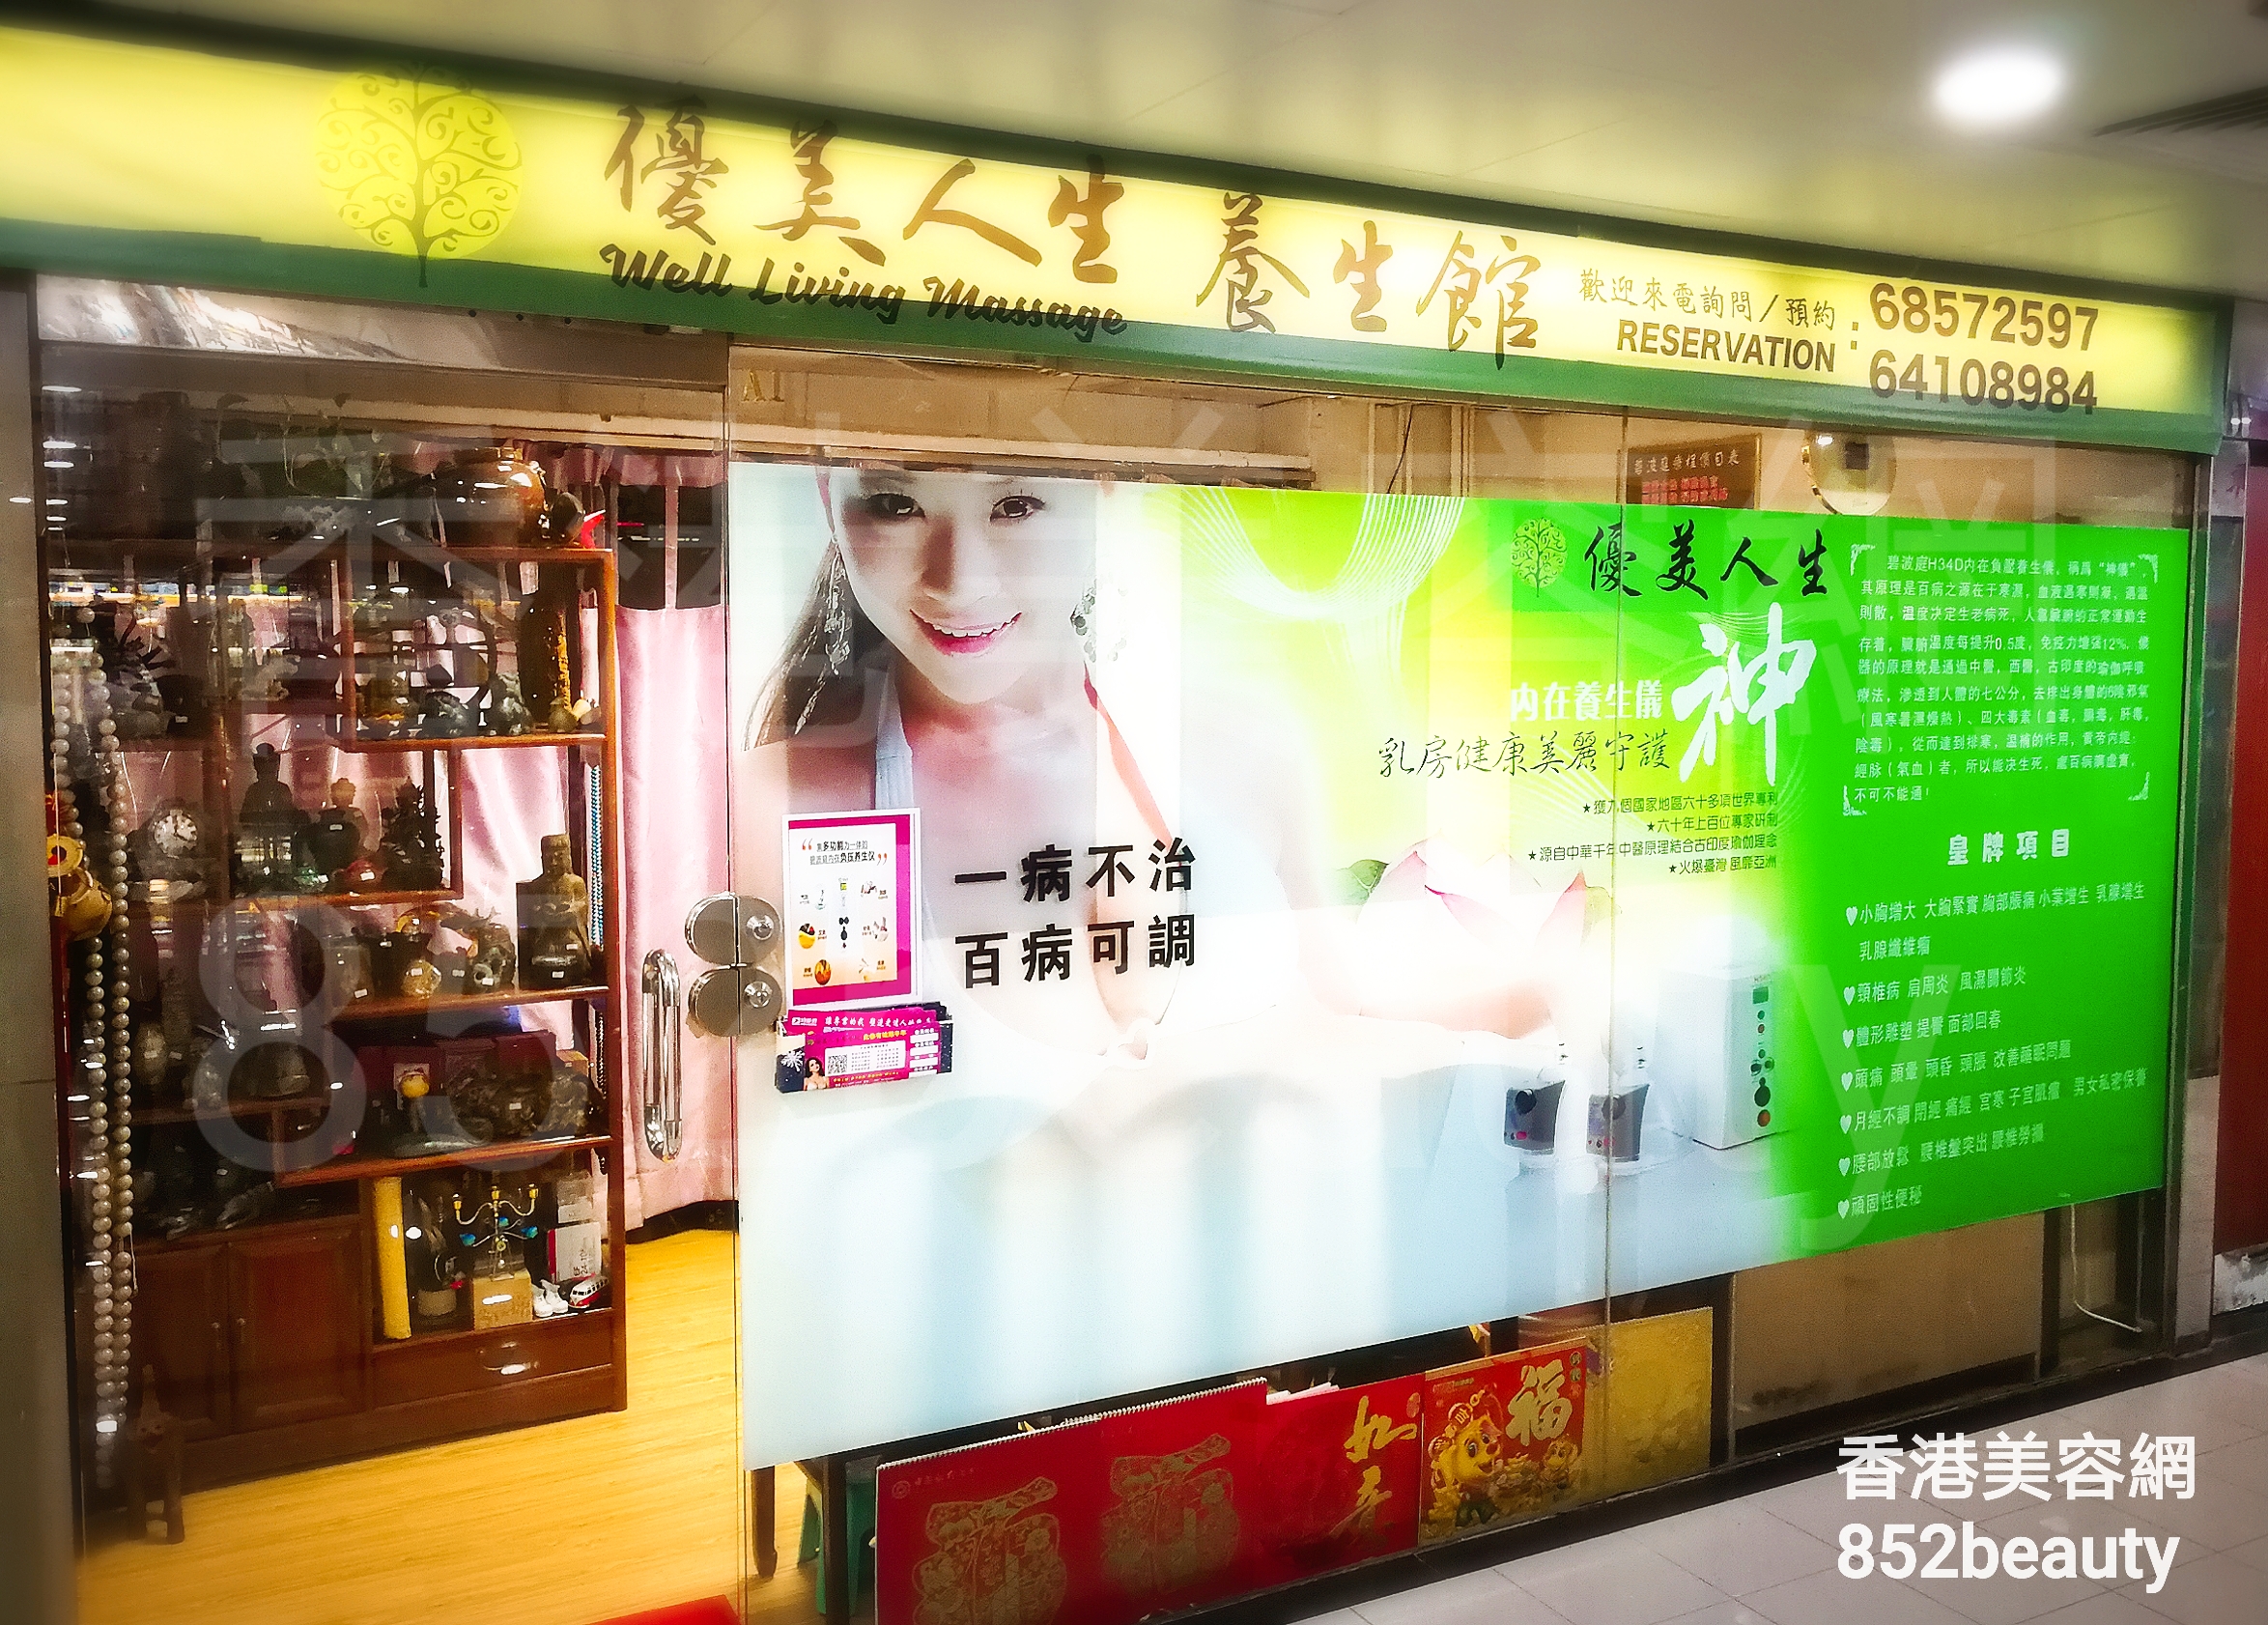 香港美容網 Hong Kong Beauty Salon 美容院 / 美容師: 優美人生 養生館